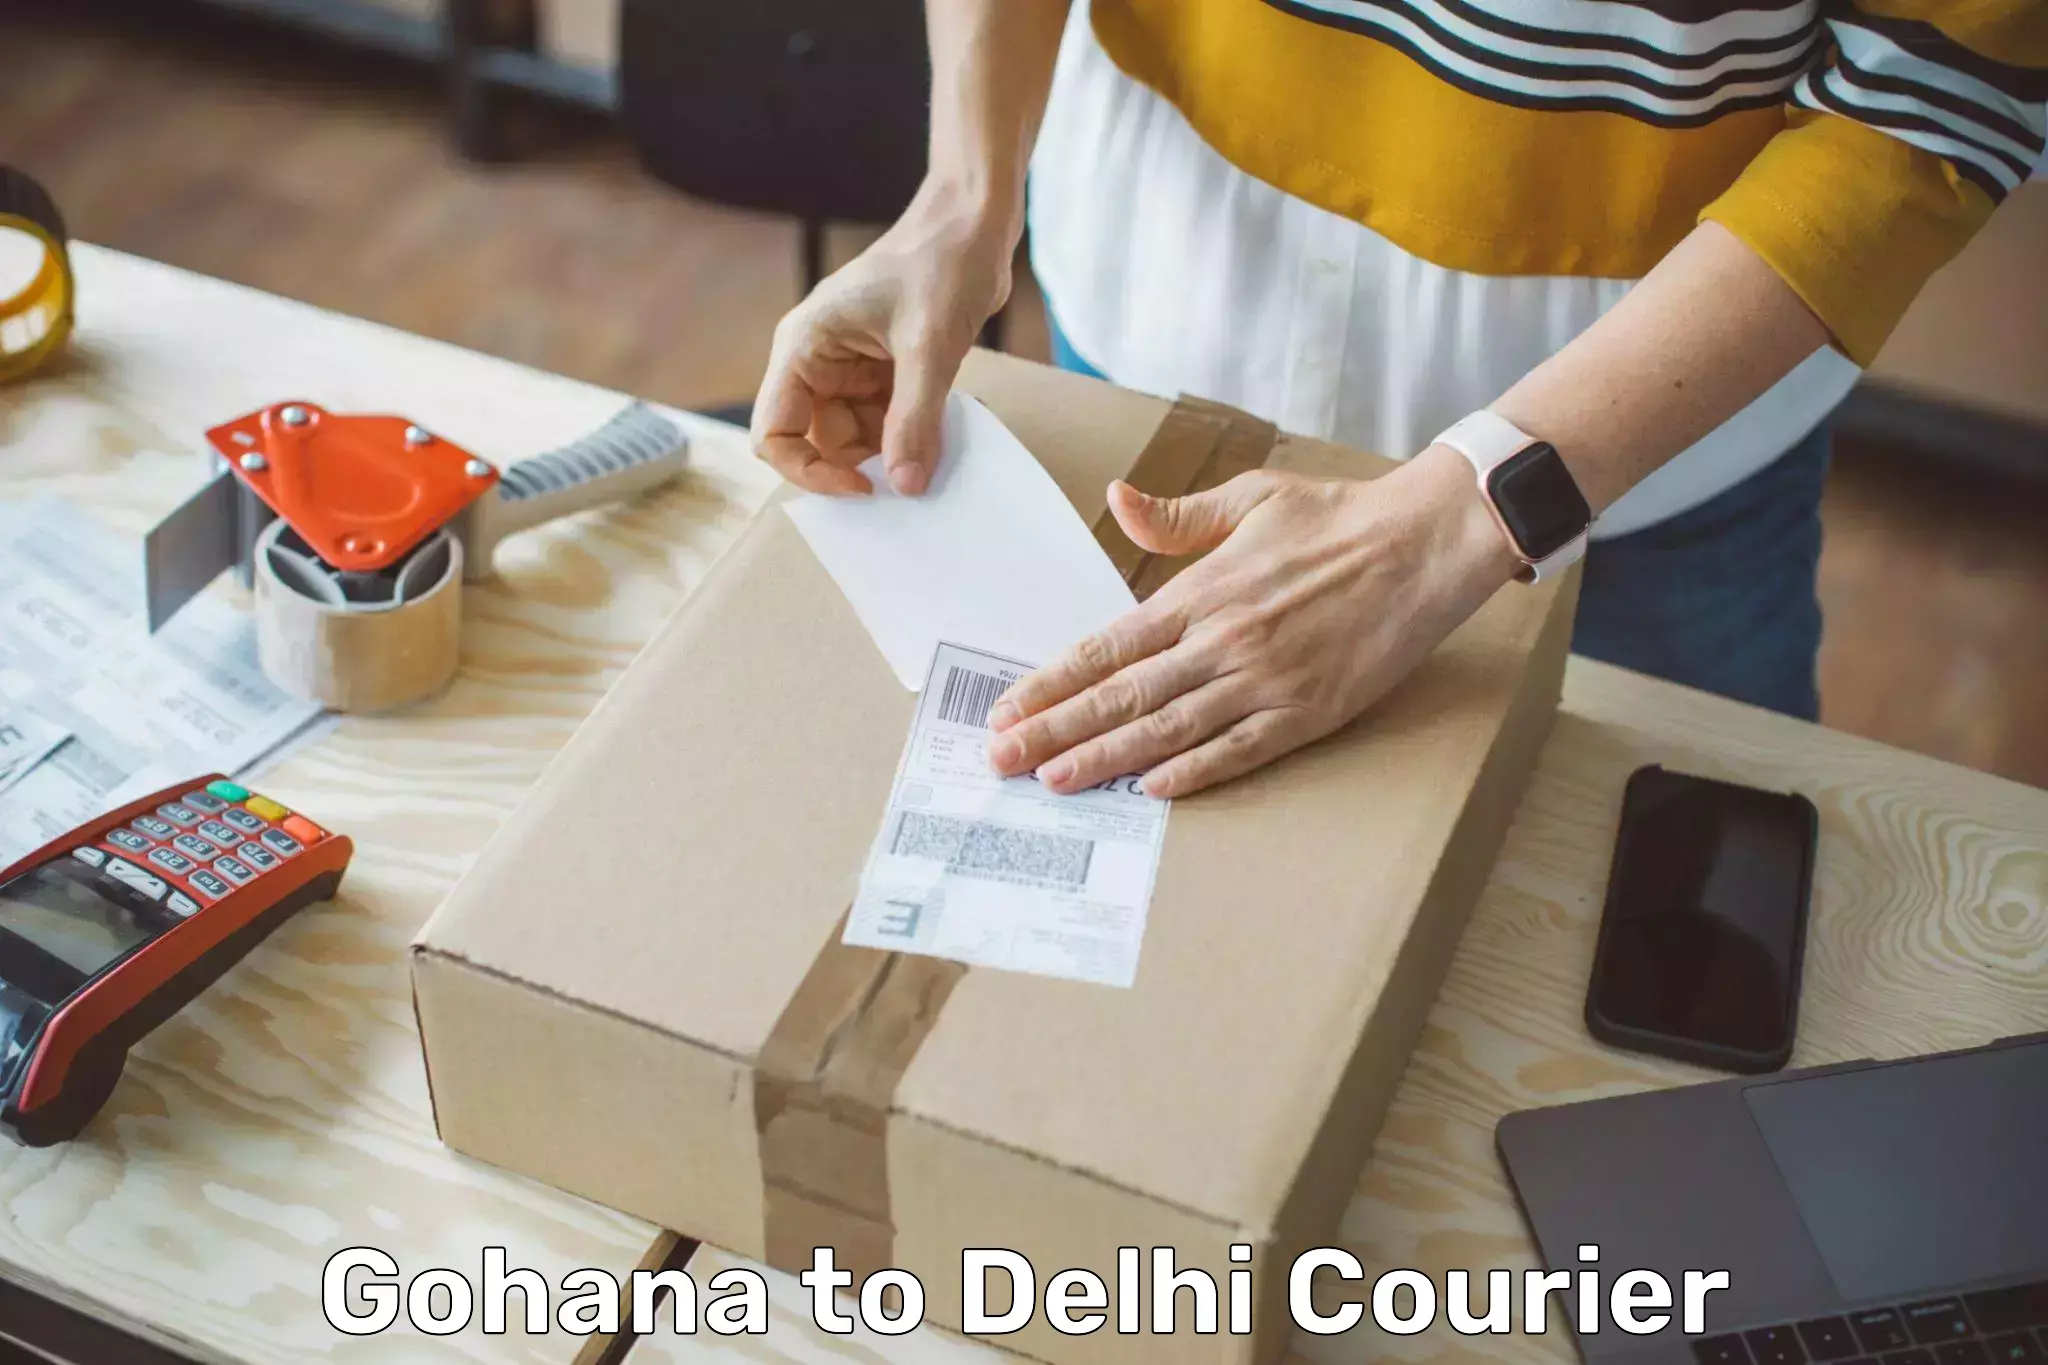 Expedited shipping solutions Gohana to Jamia Millia Islamia New Delhi